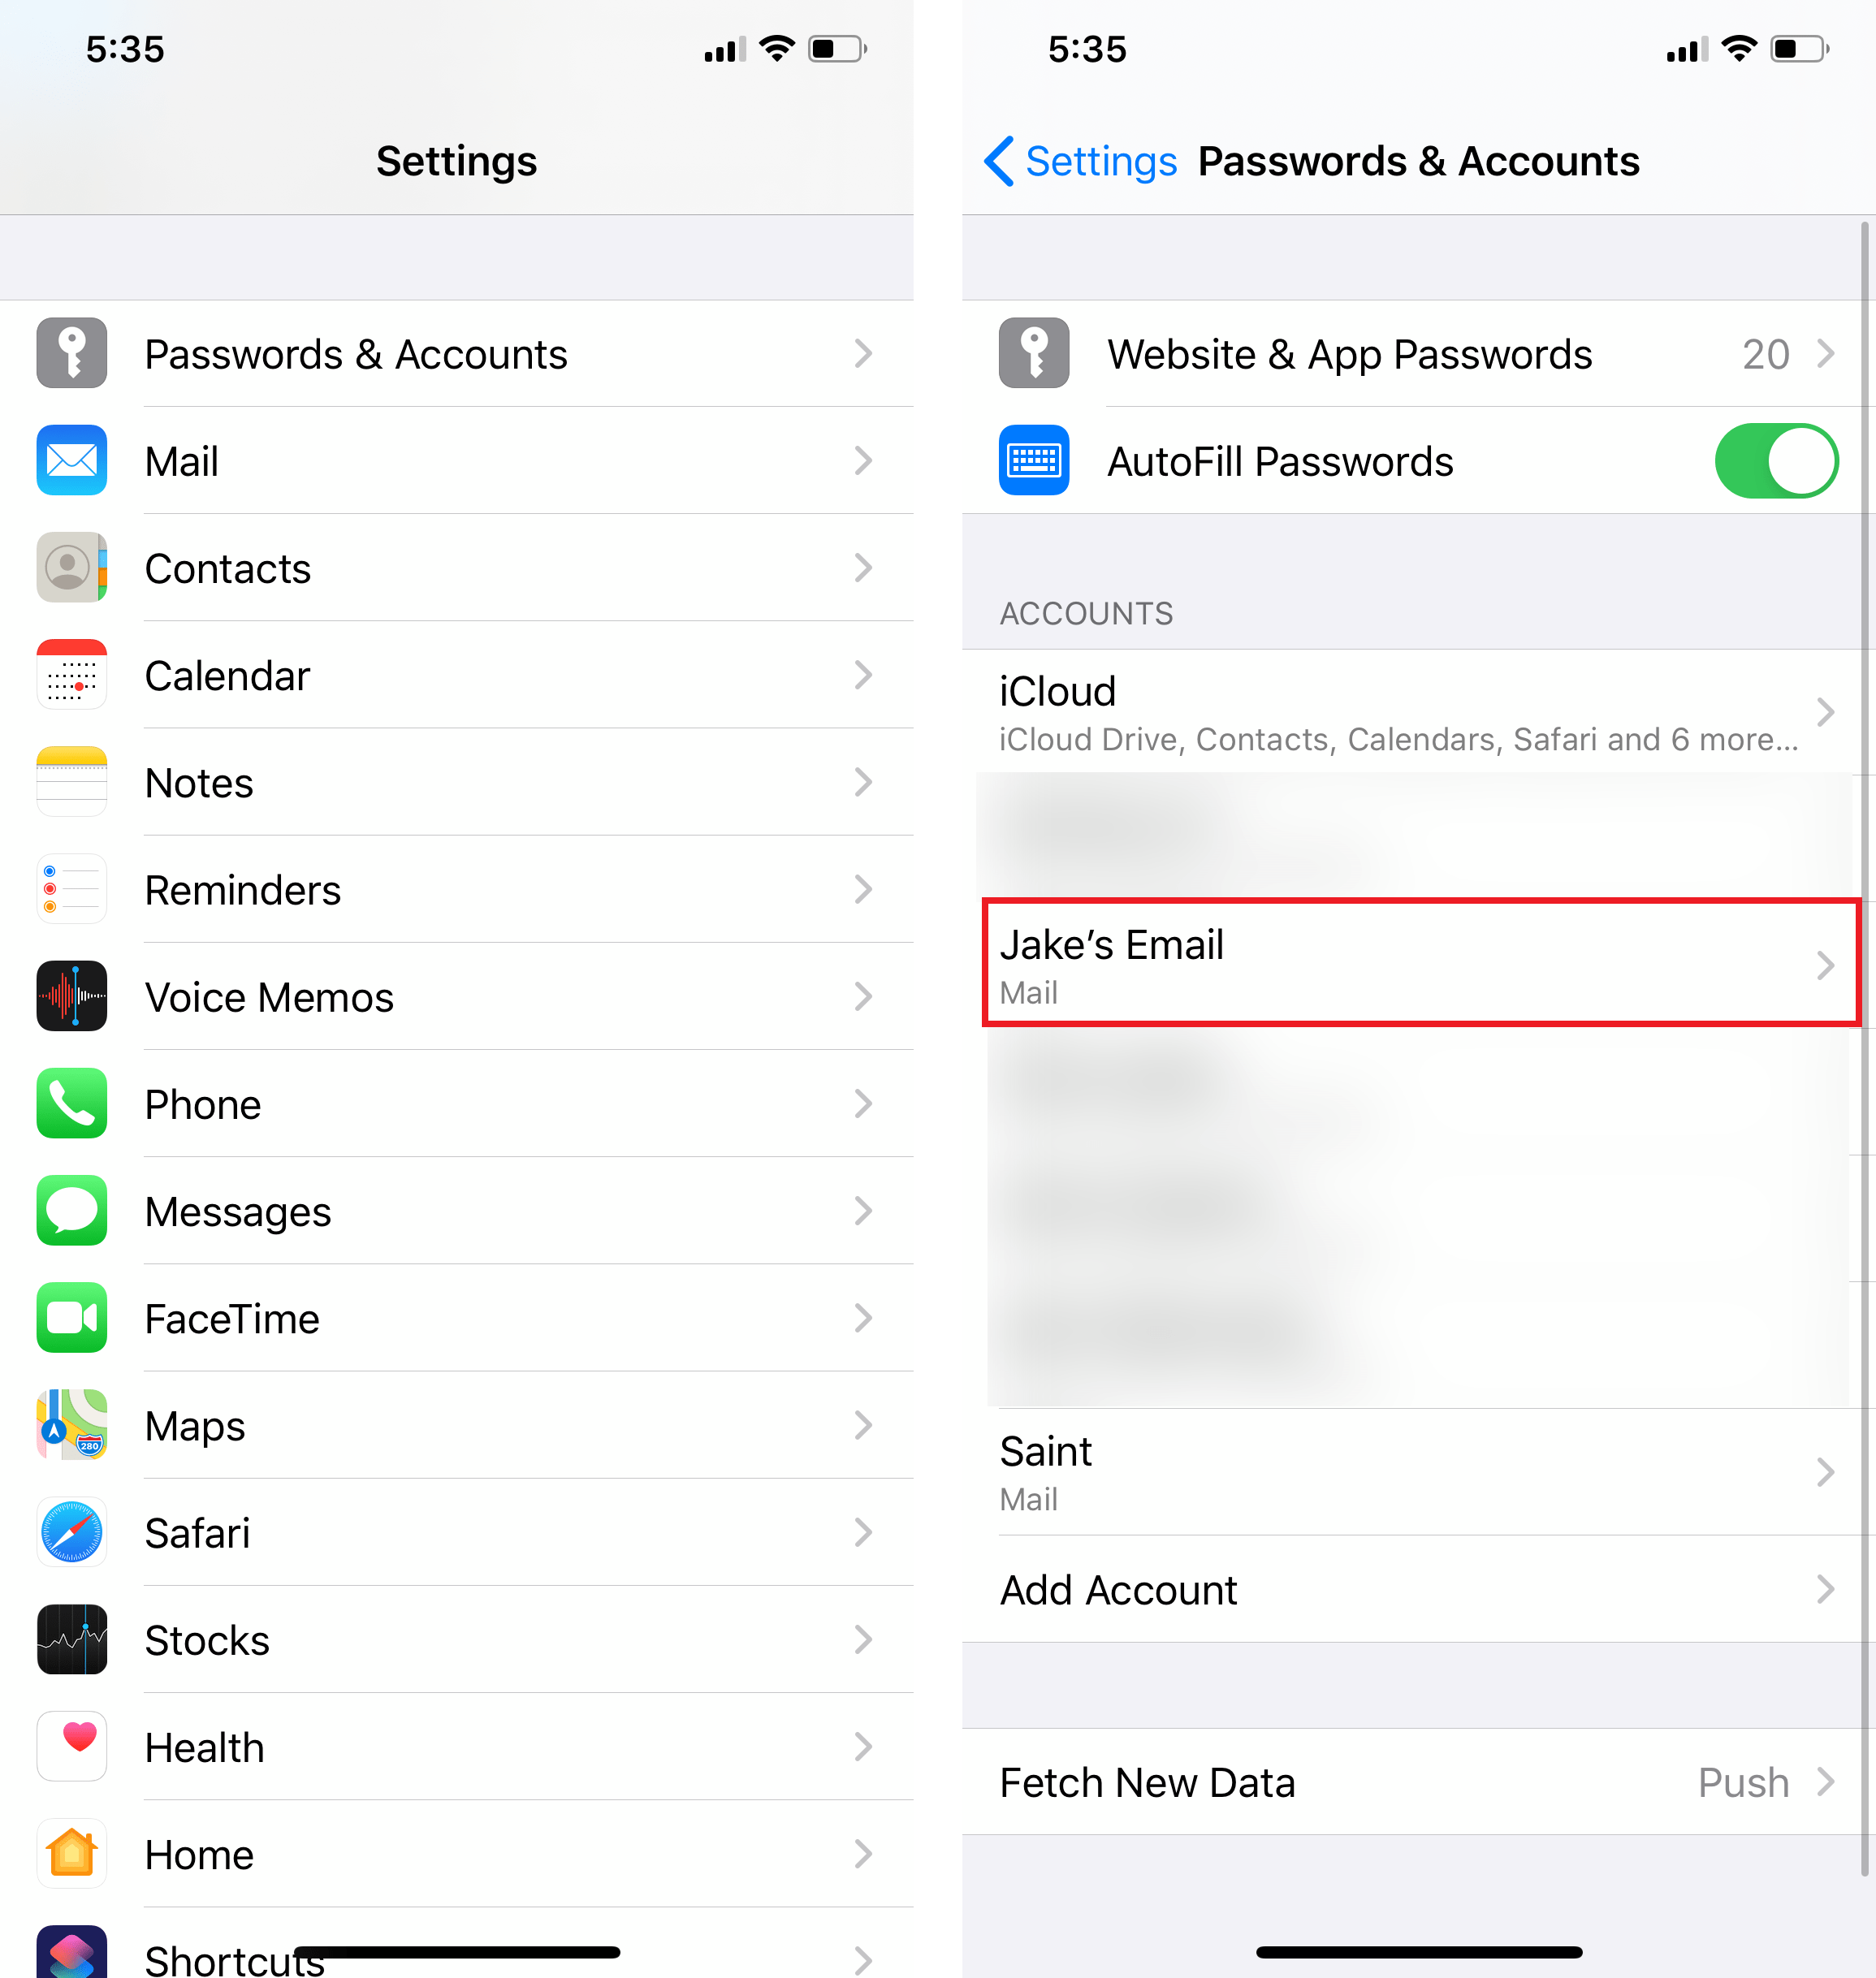 can't delete trash folder on iOS 13